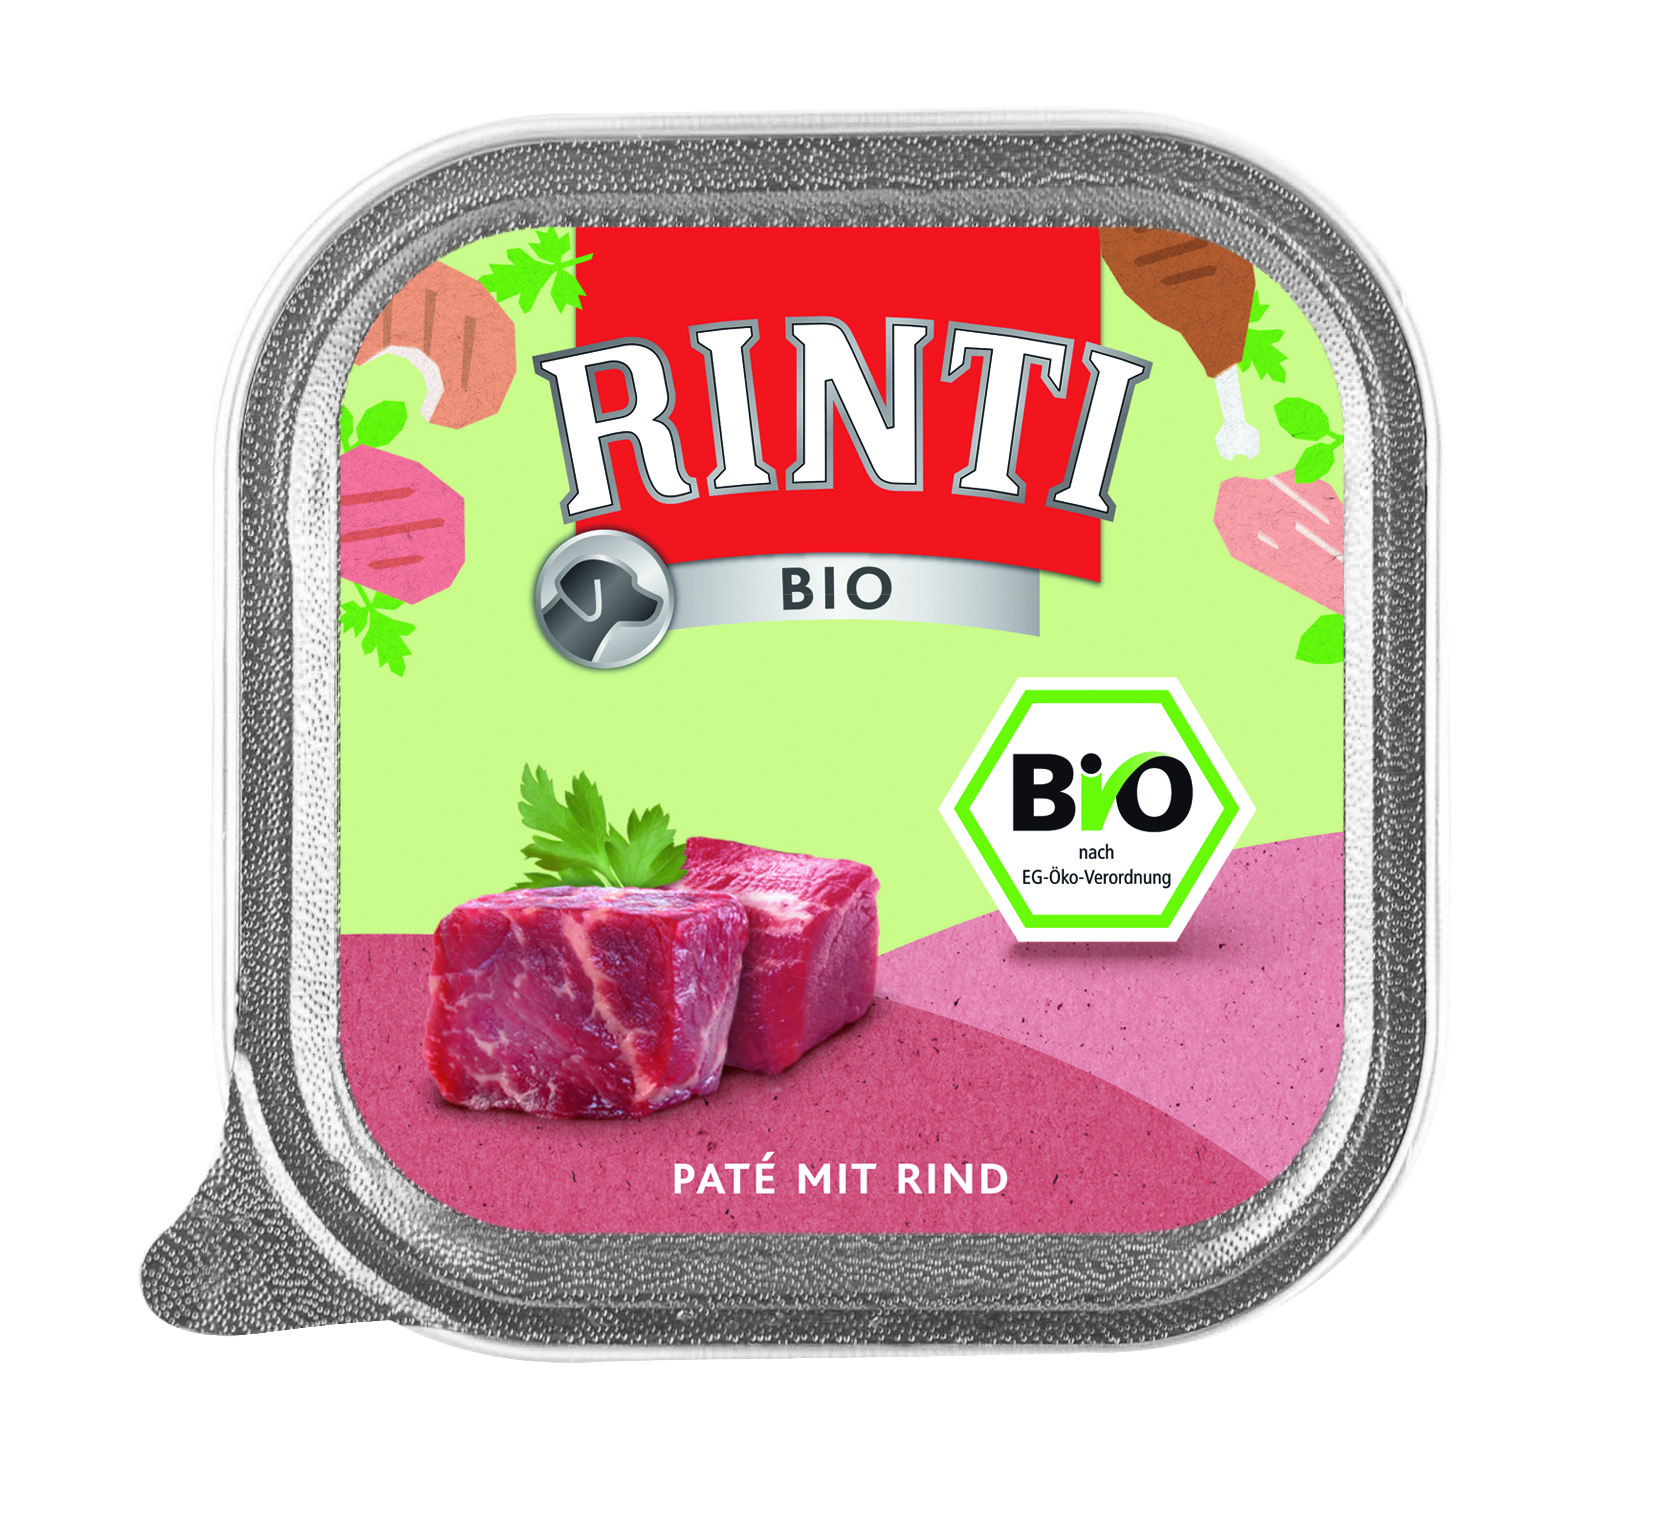 Rinti Feinest Bio Geflügel pur mit Rind